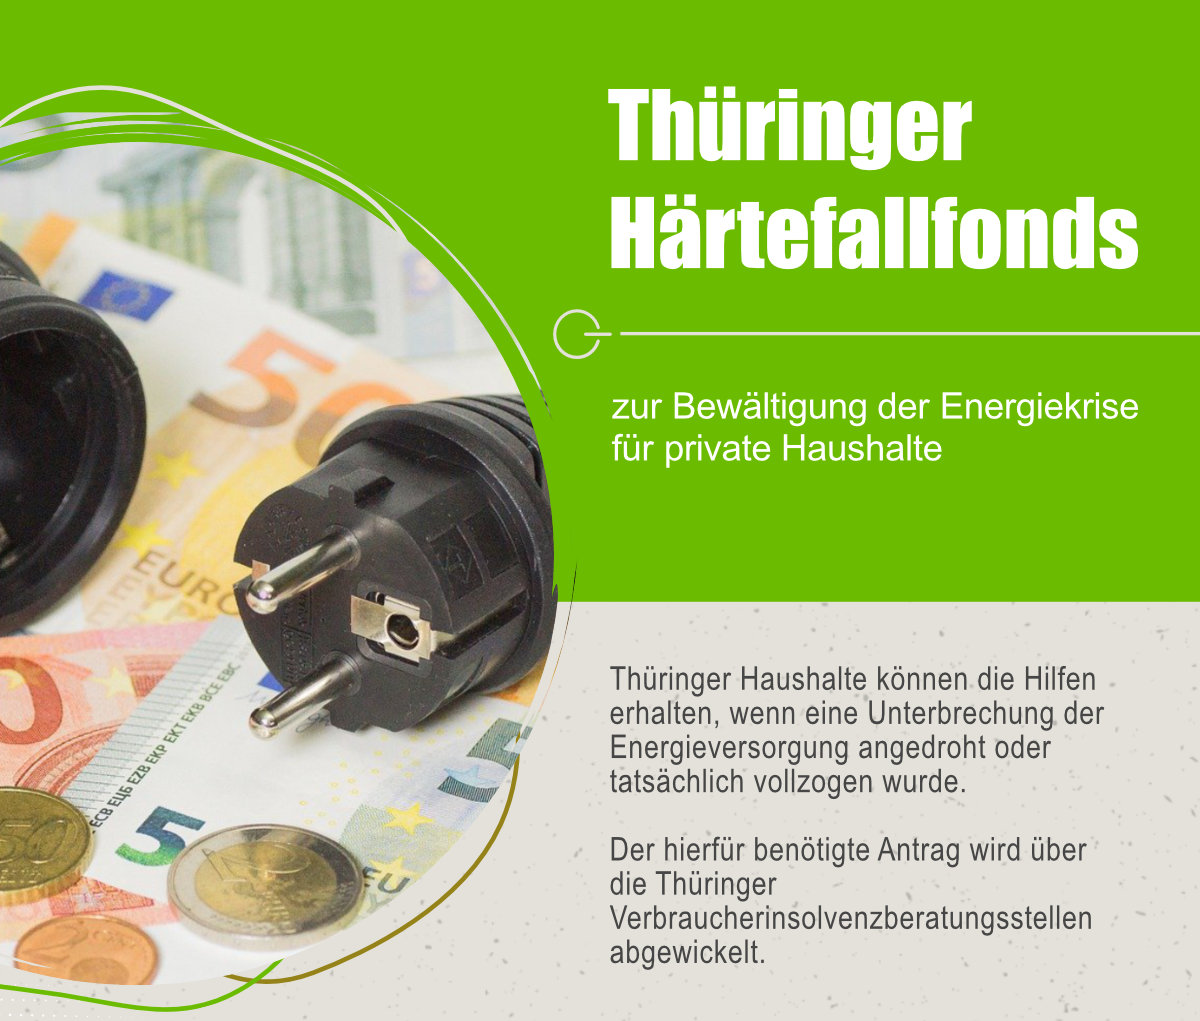 Thüringer Härtefallfonds zur Abwendung von Energiesperren 